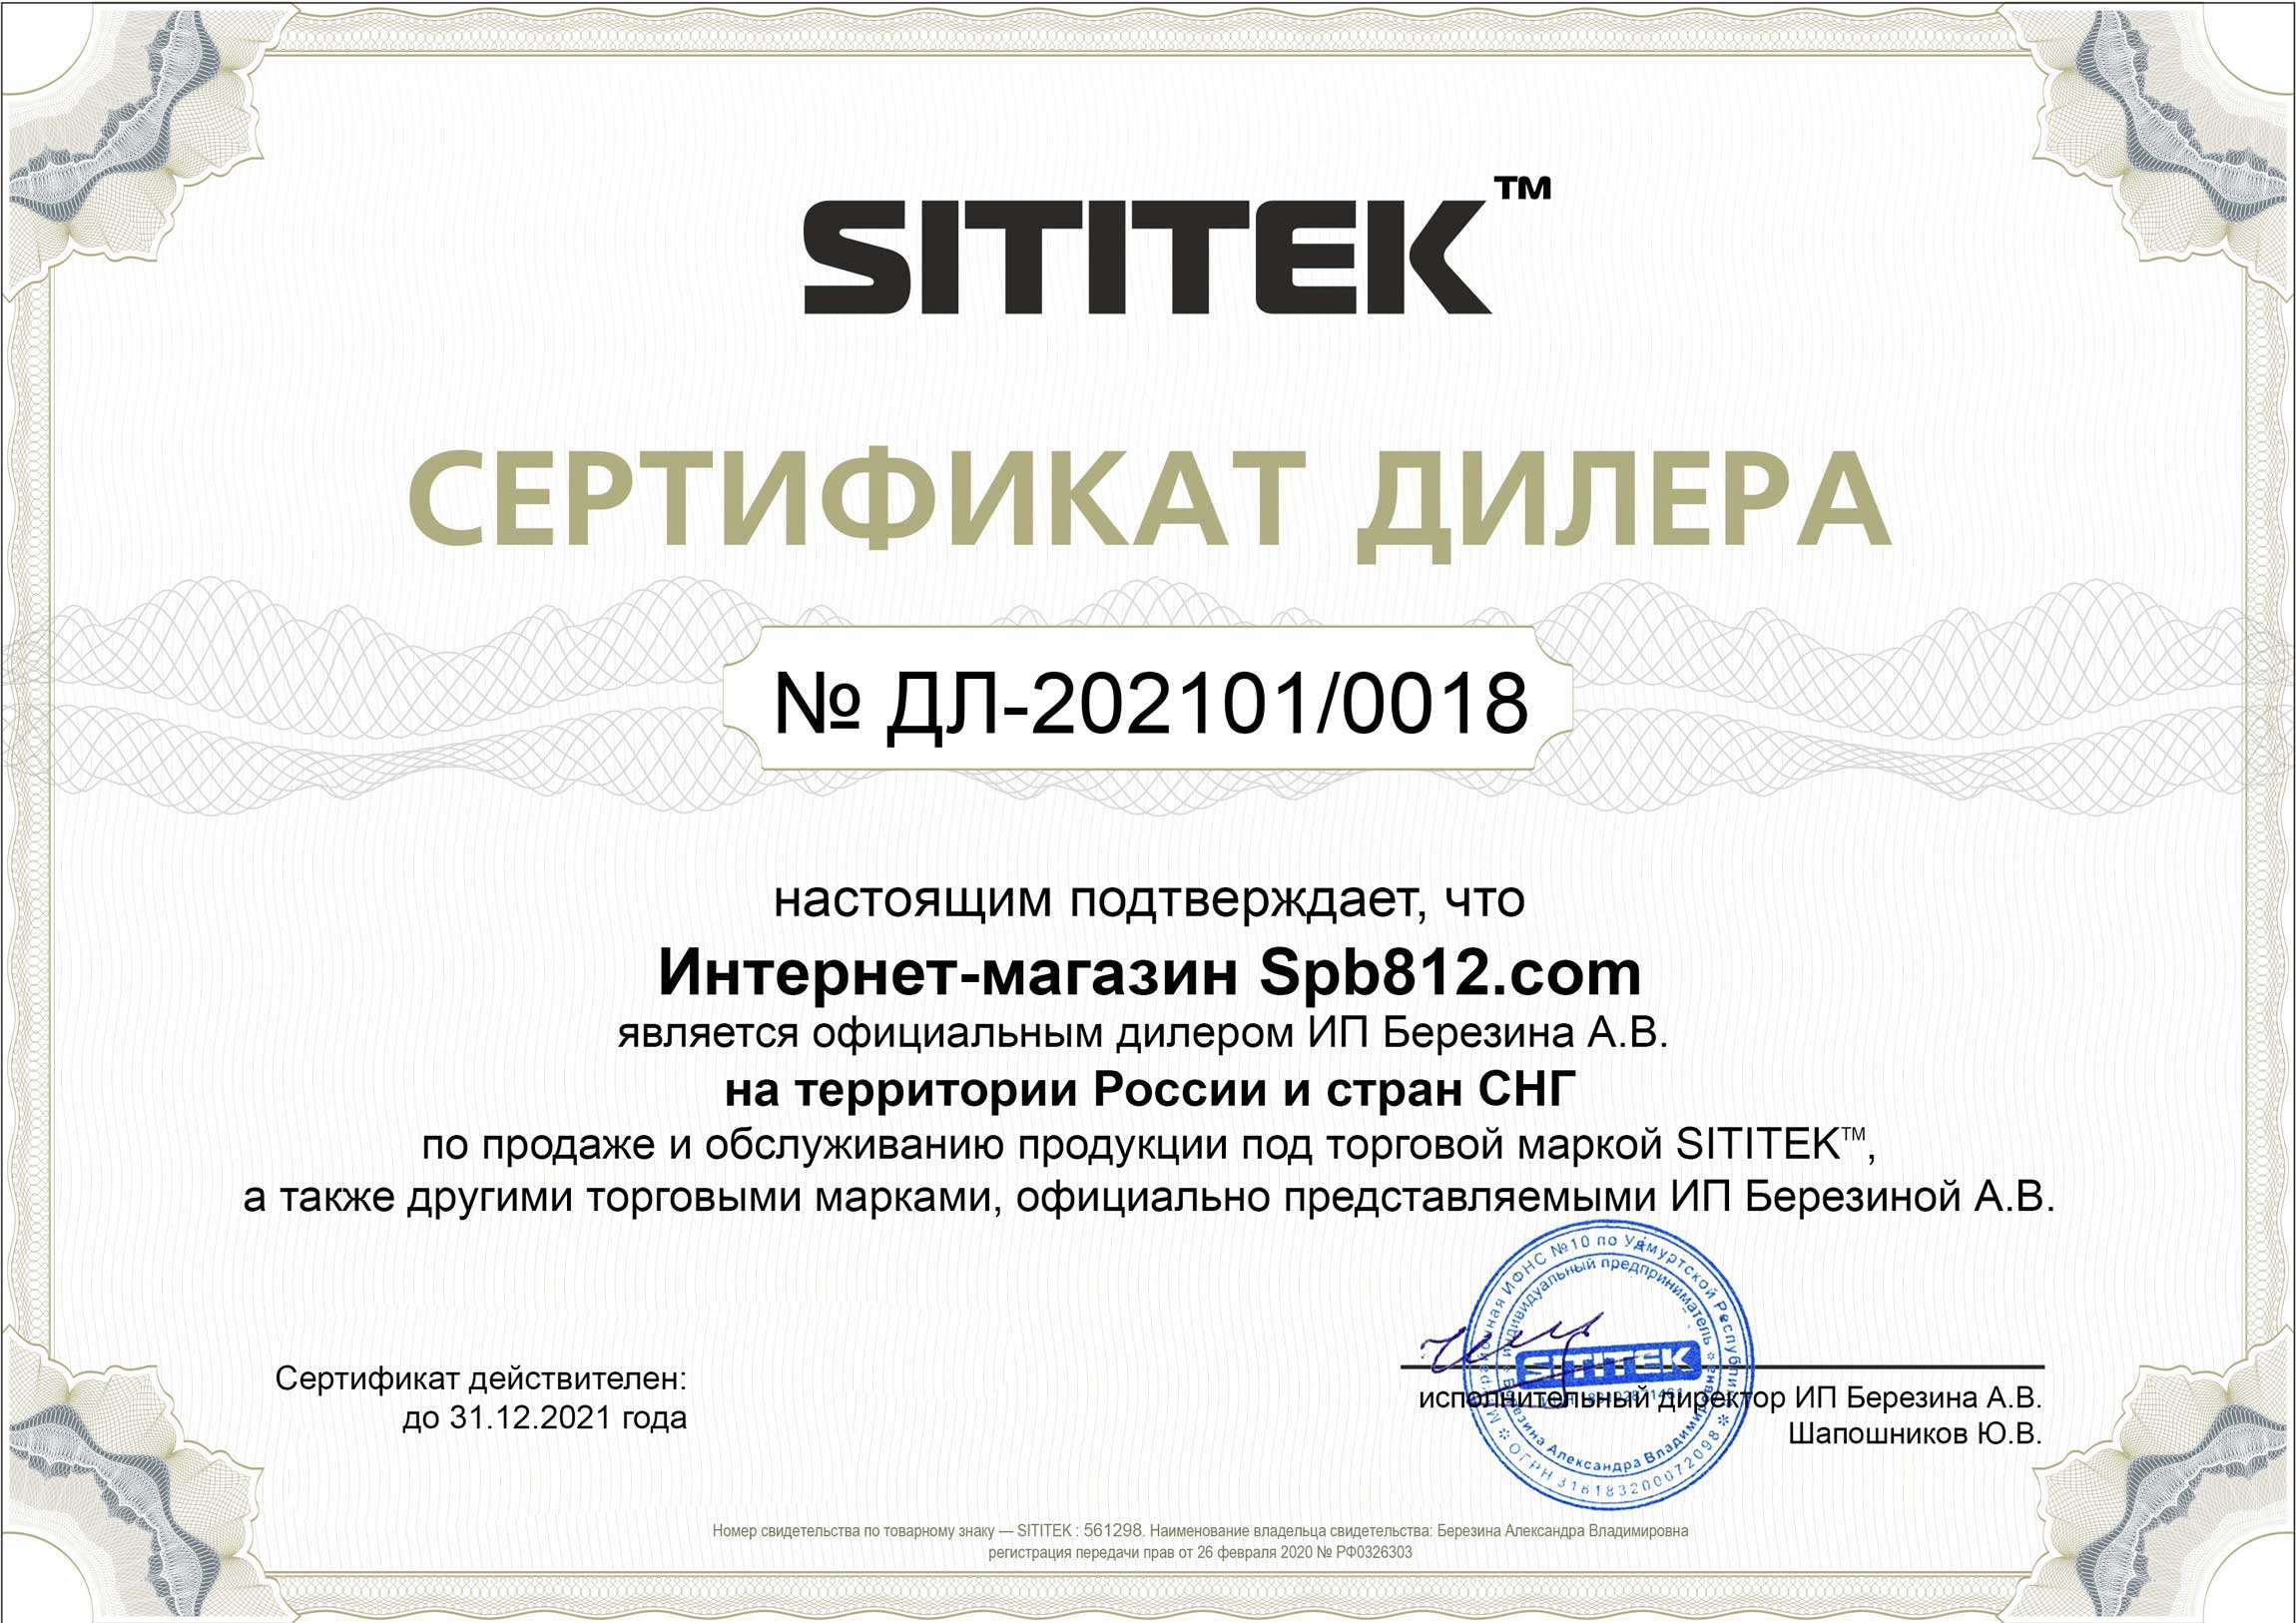 Наш магазин является официальным дилером продукции марки SITITEK и имеет соответствующий сертификат (нажмите для увеличения)